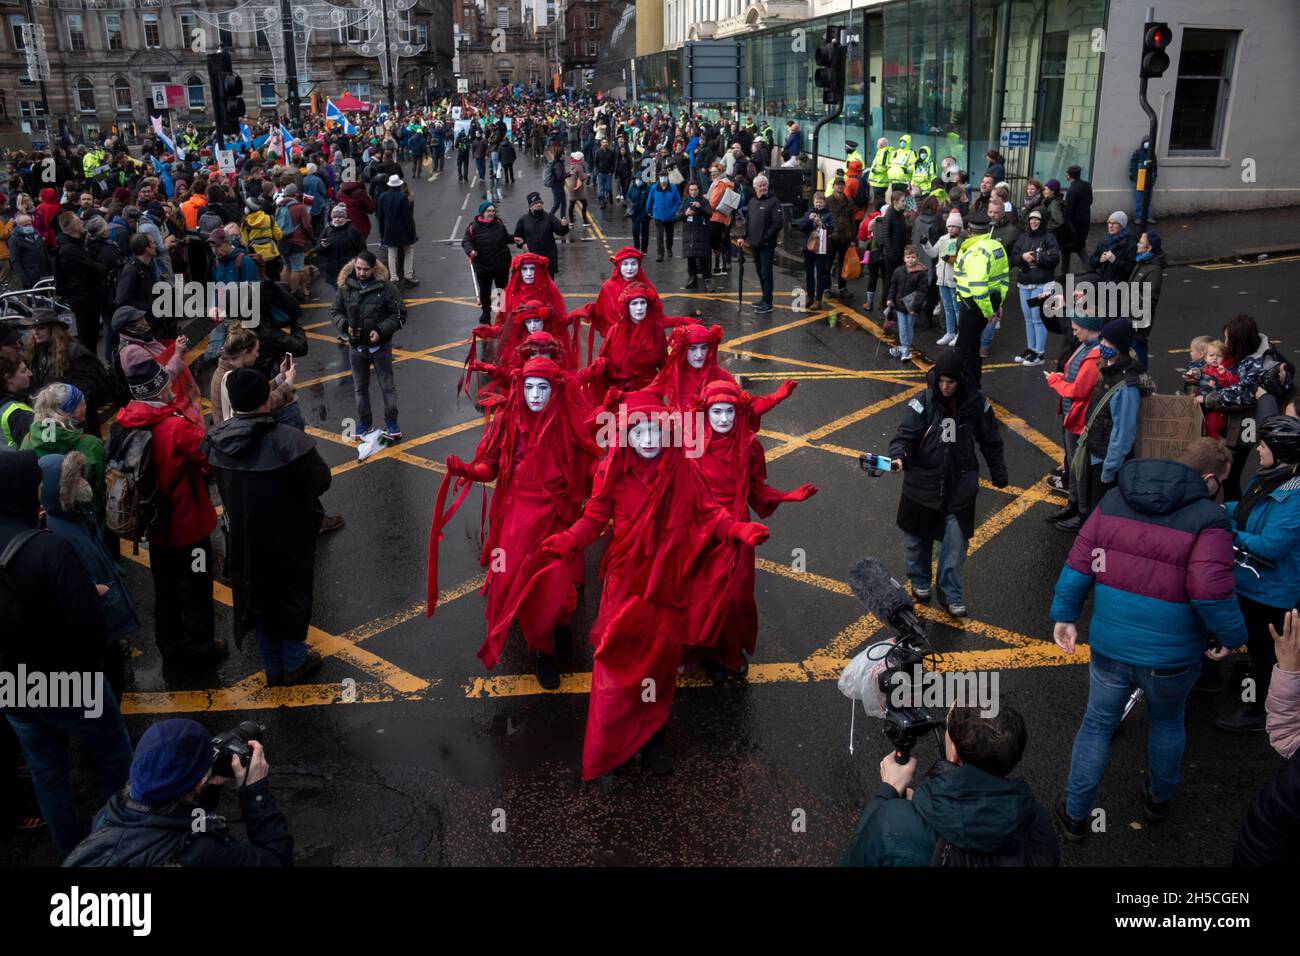 La Brigade de la rébellion Rouge une fusillade de la rébellion d'extinction sur la place George de Glasgow pour la Journée mondiale d'action pour la marche climatique.Au cours de la COP26 de l'ONU. Banque D'Images